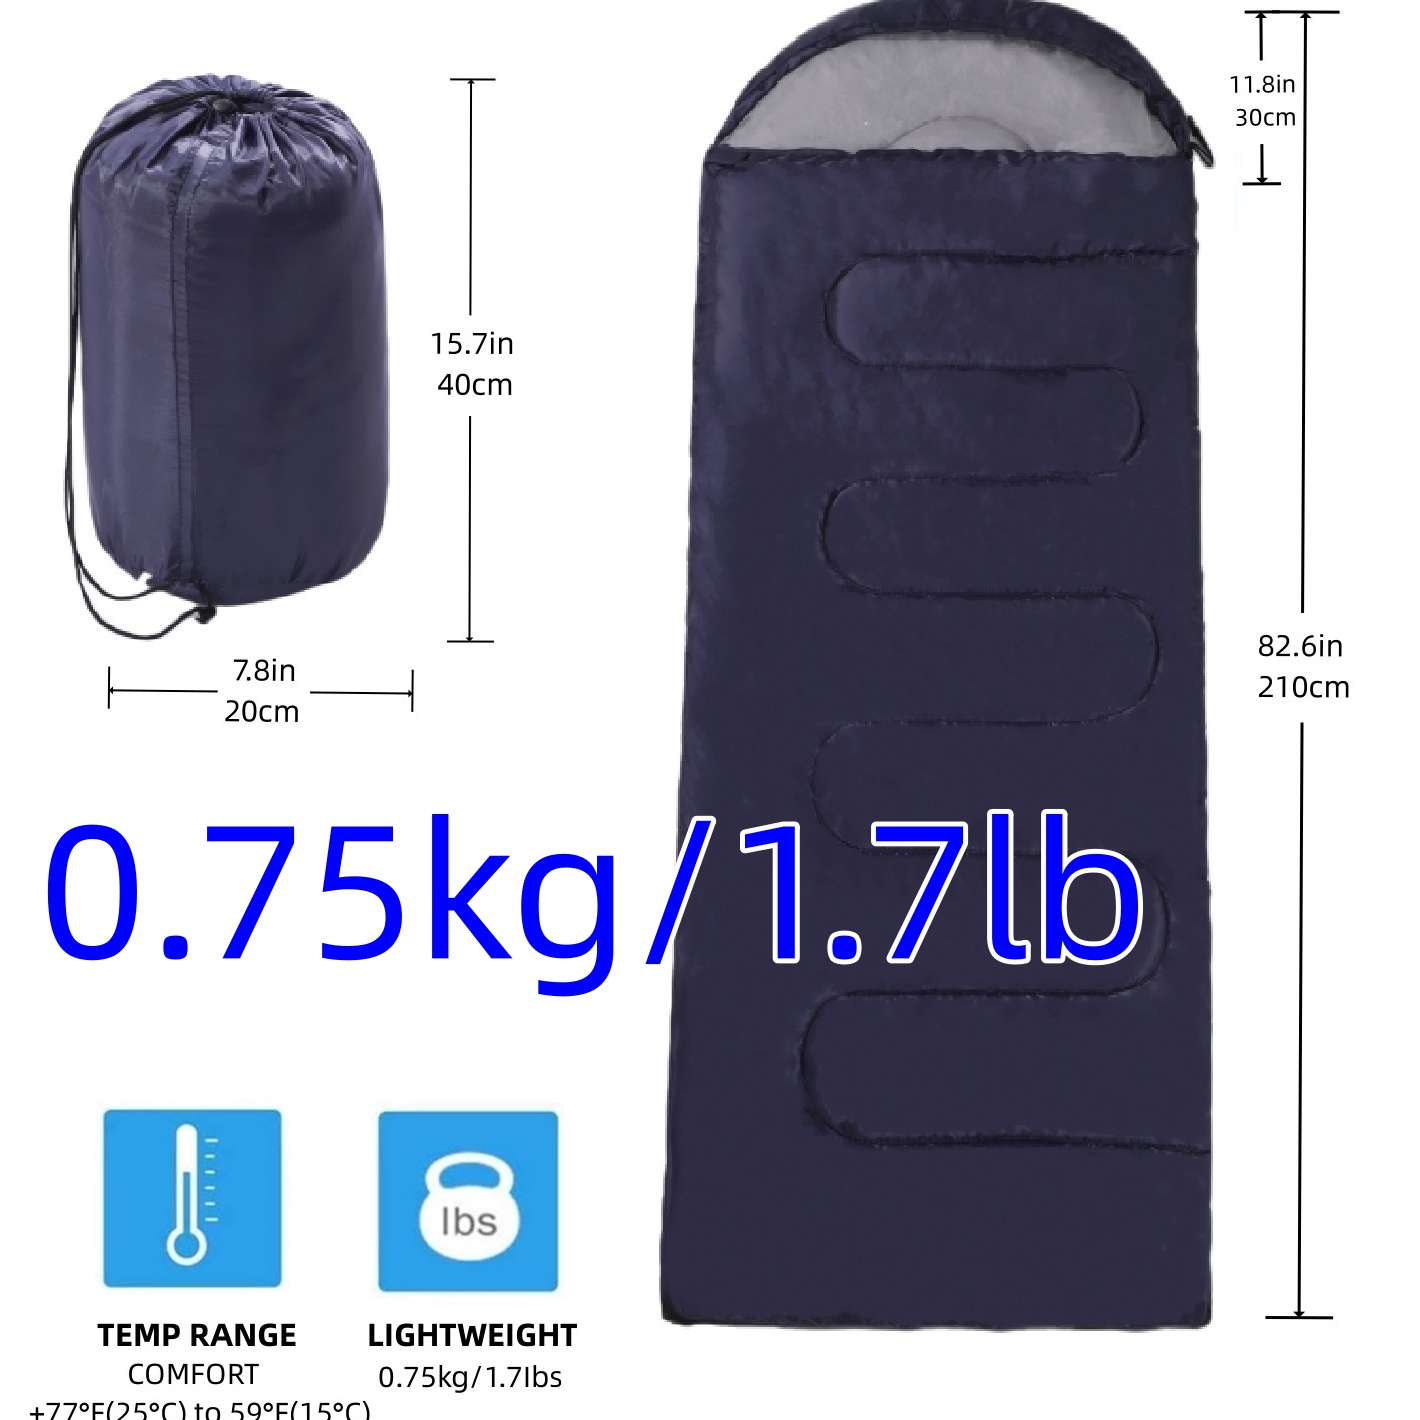 Saco de dormir saco de dormir sobre de camping saco de dormir térmico para  adultos niños saco de dormir de invierno al aire libre viaje impermeable